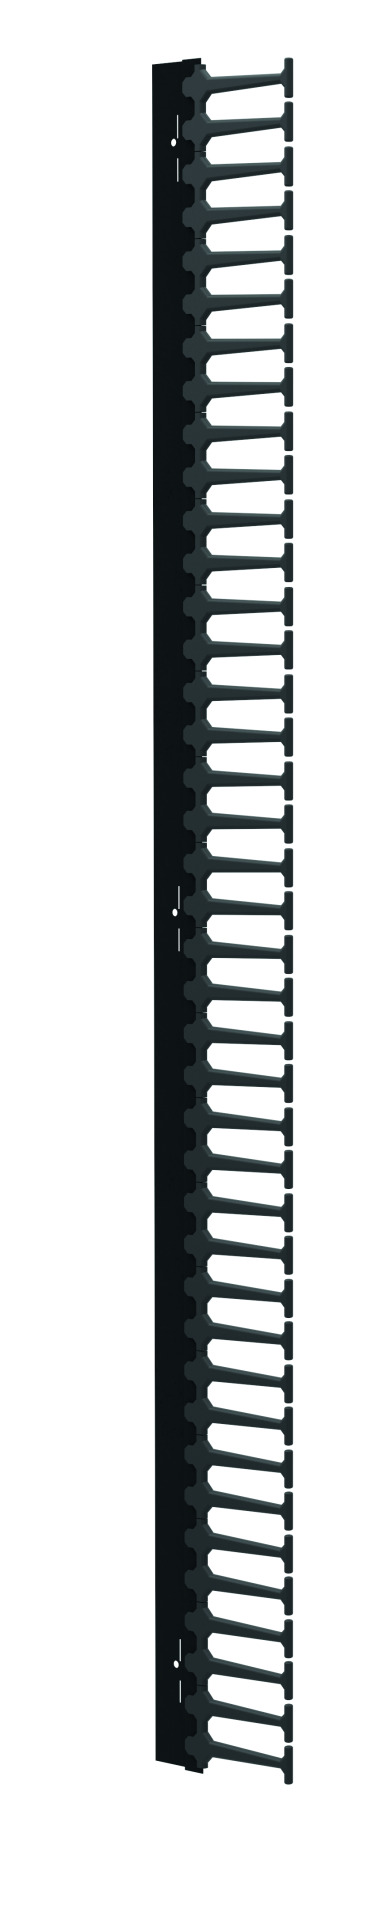 Vertikaler Kabelkamm für ESV 47HE, 1 Stück, RAL9005